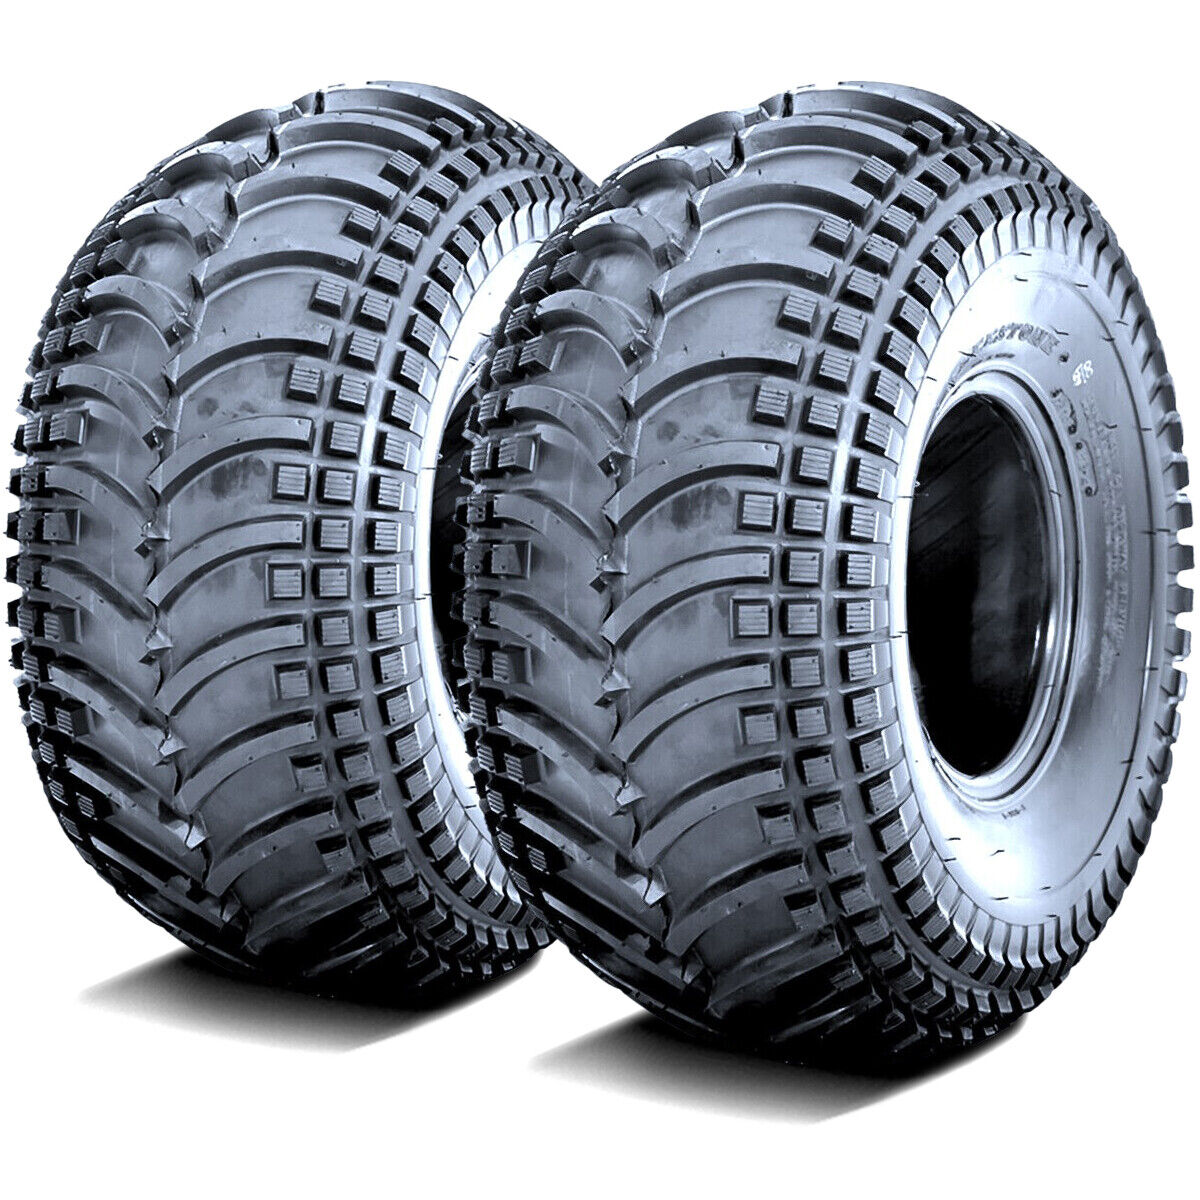 2 Tires Deestone D930 25x10.00-12 25x10-12 25x10x12 45F 4 Ply MT M/T Mud ATV UTV